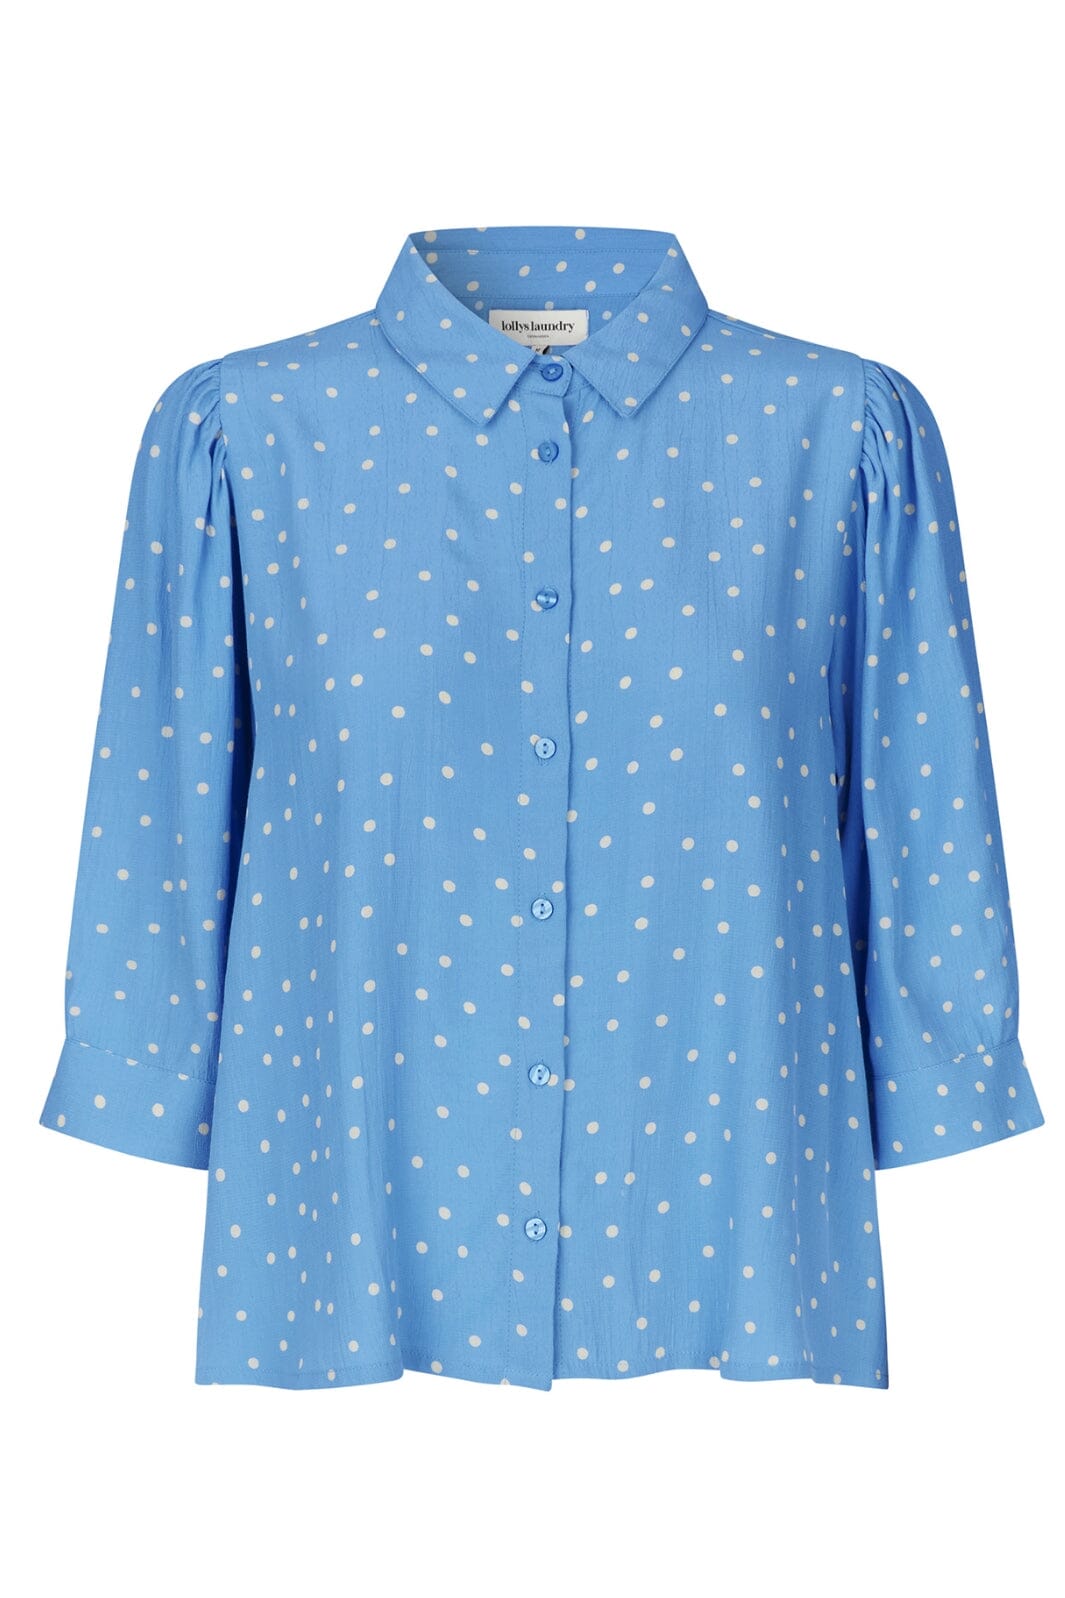 Lollys Laundry - BonoLL Shirt SS - 76 Dot Print Skjorter 